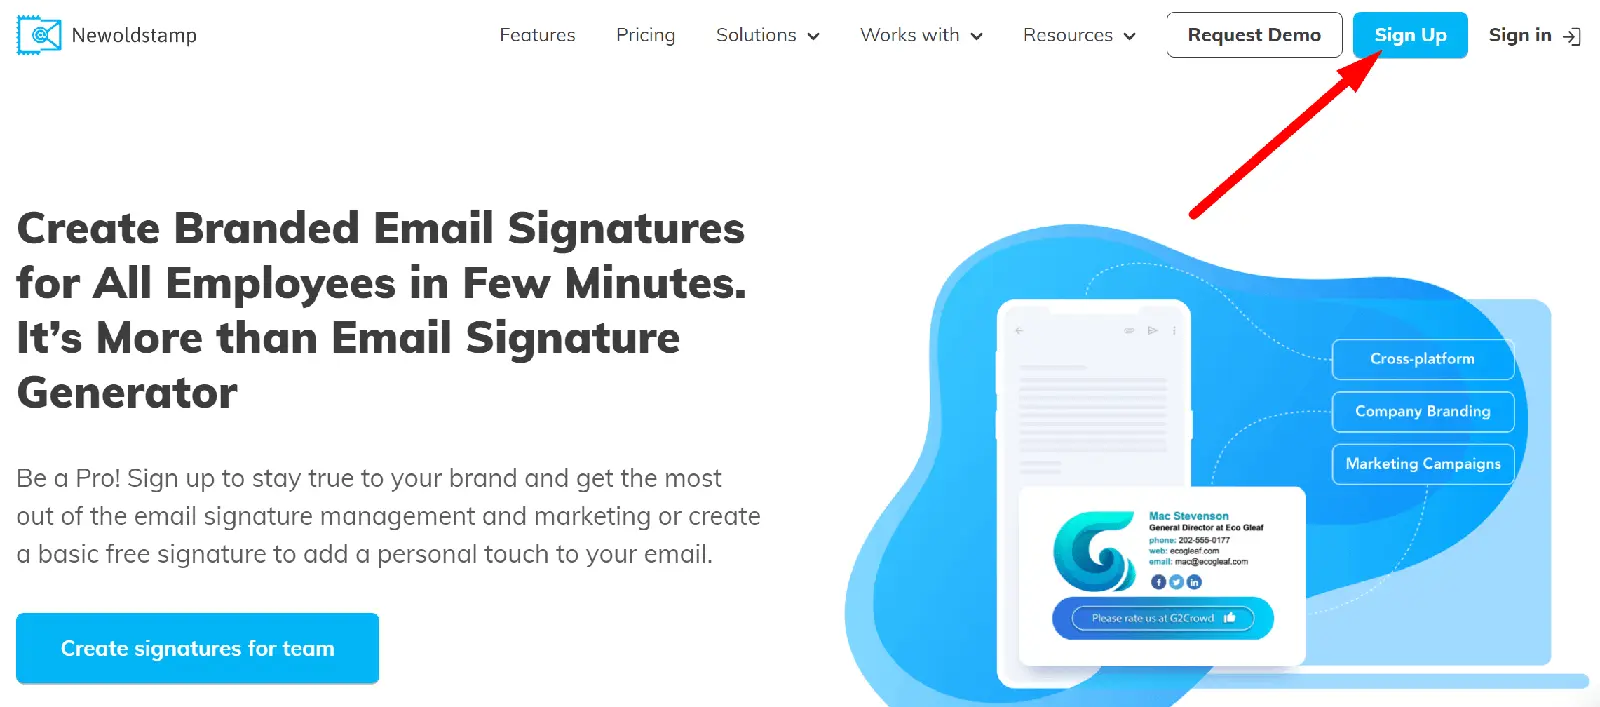 Newoldstamp email signature generator